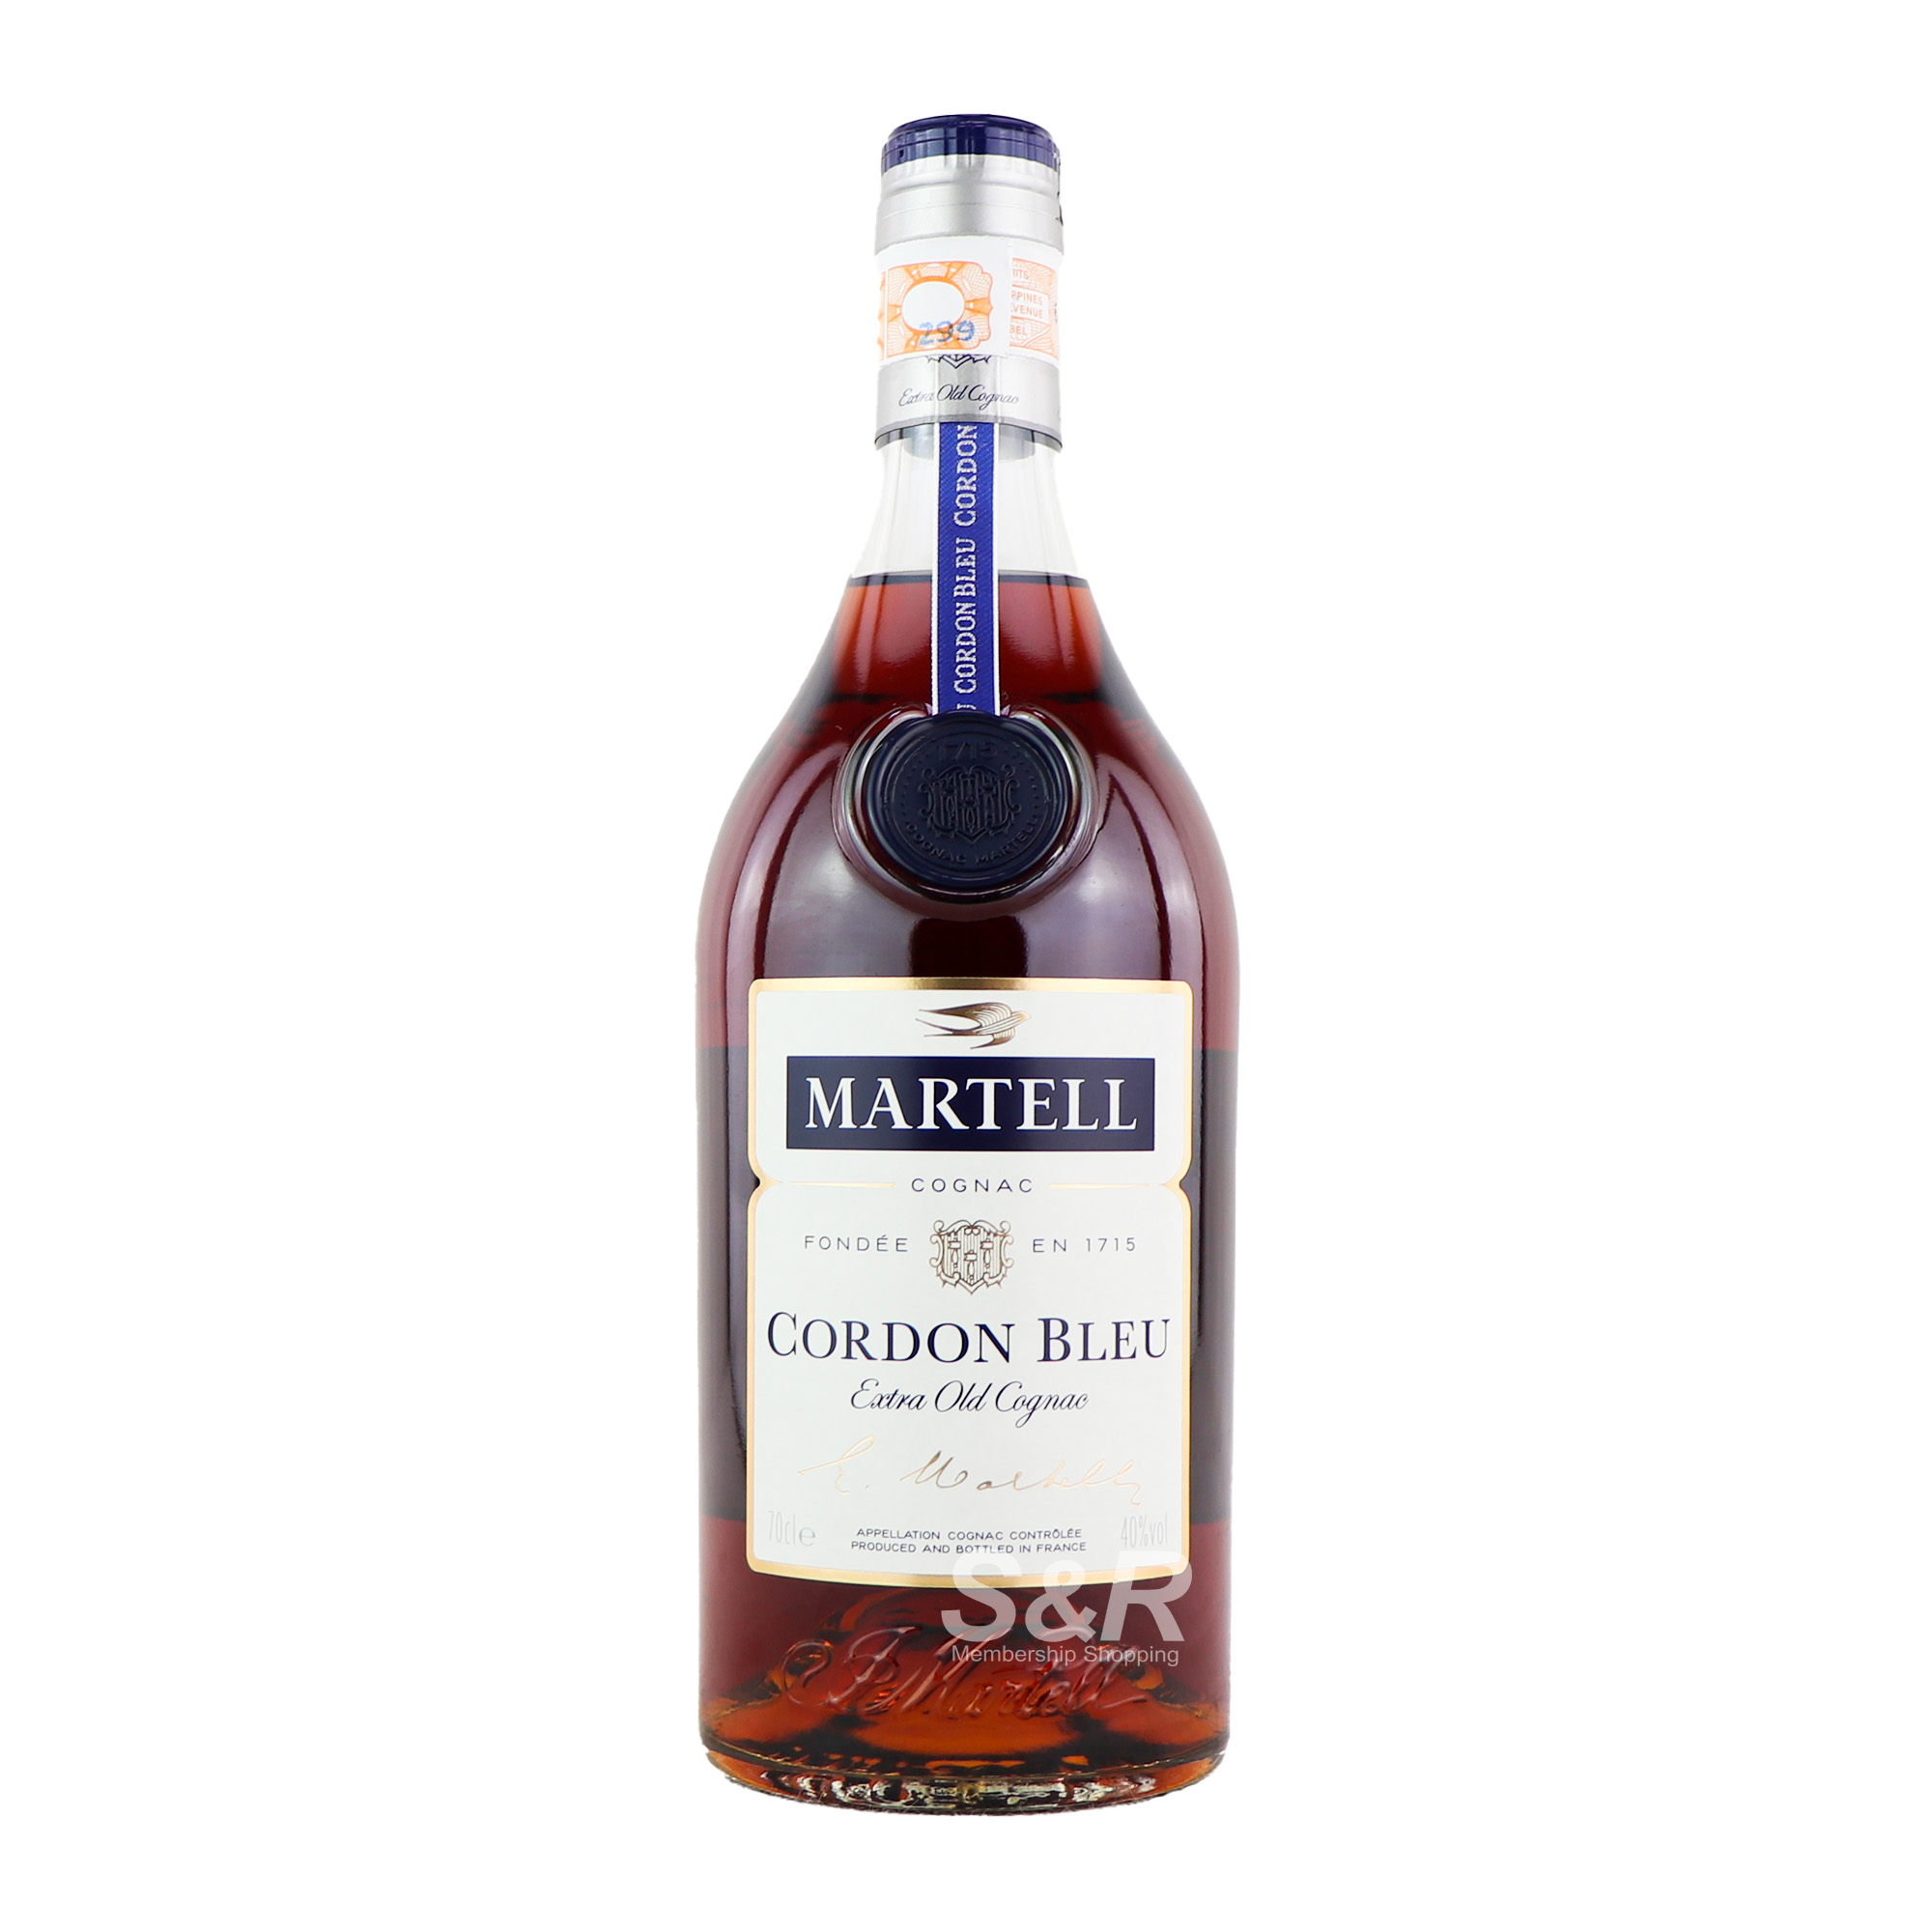 Martell Cordon Bleu Cognac 700mL